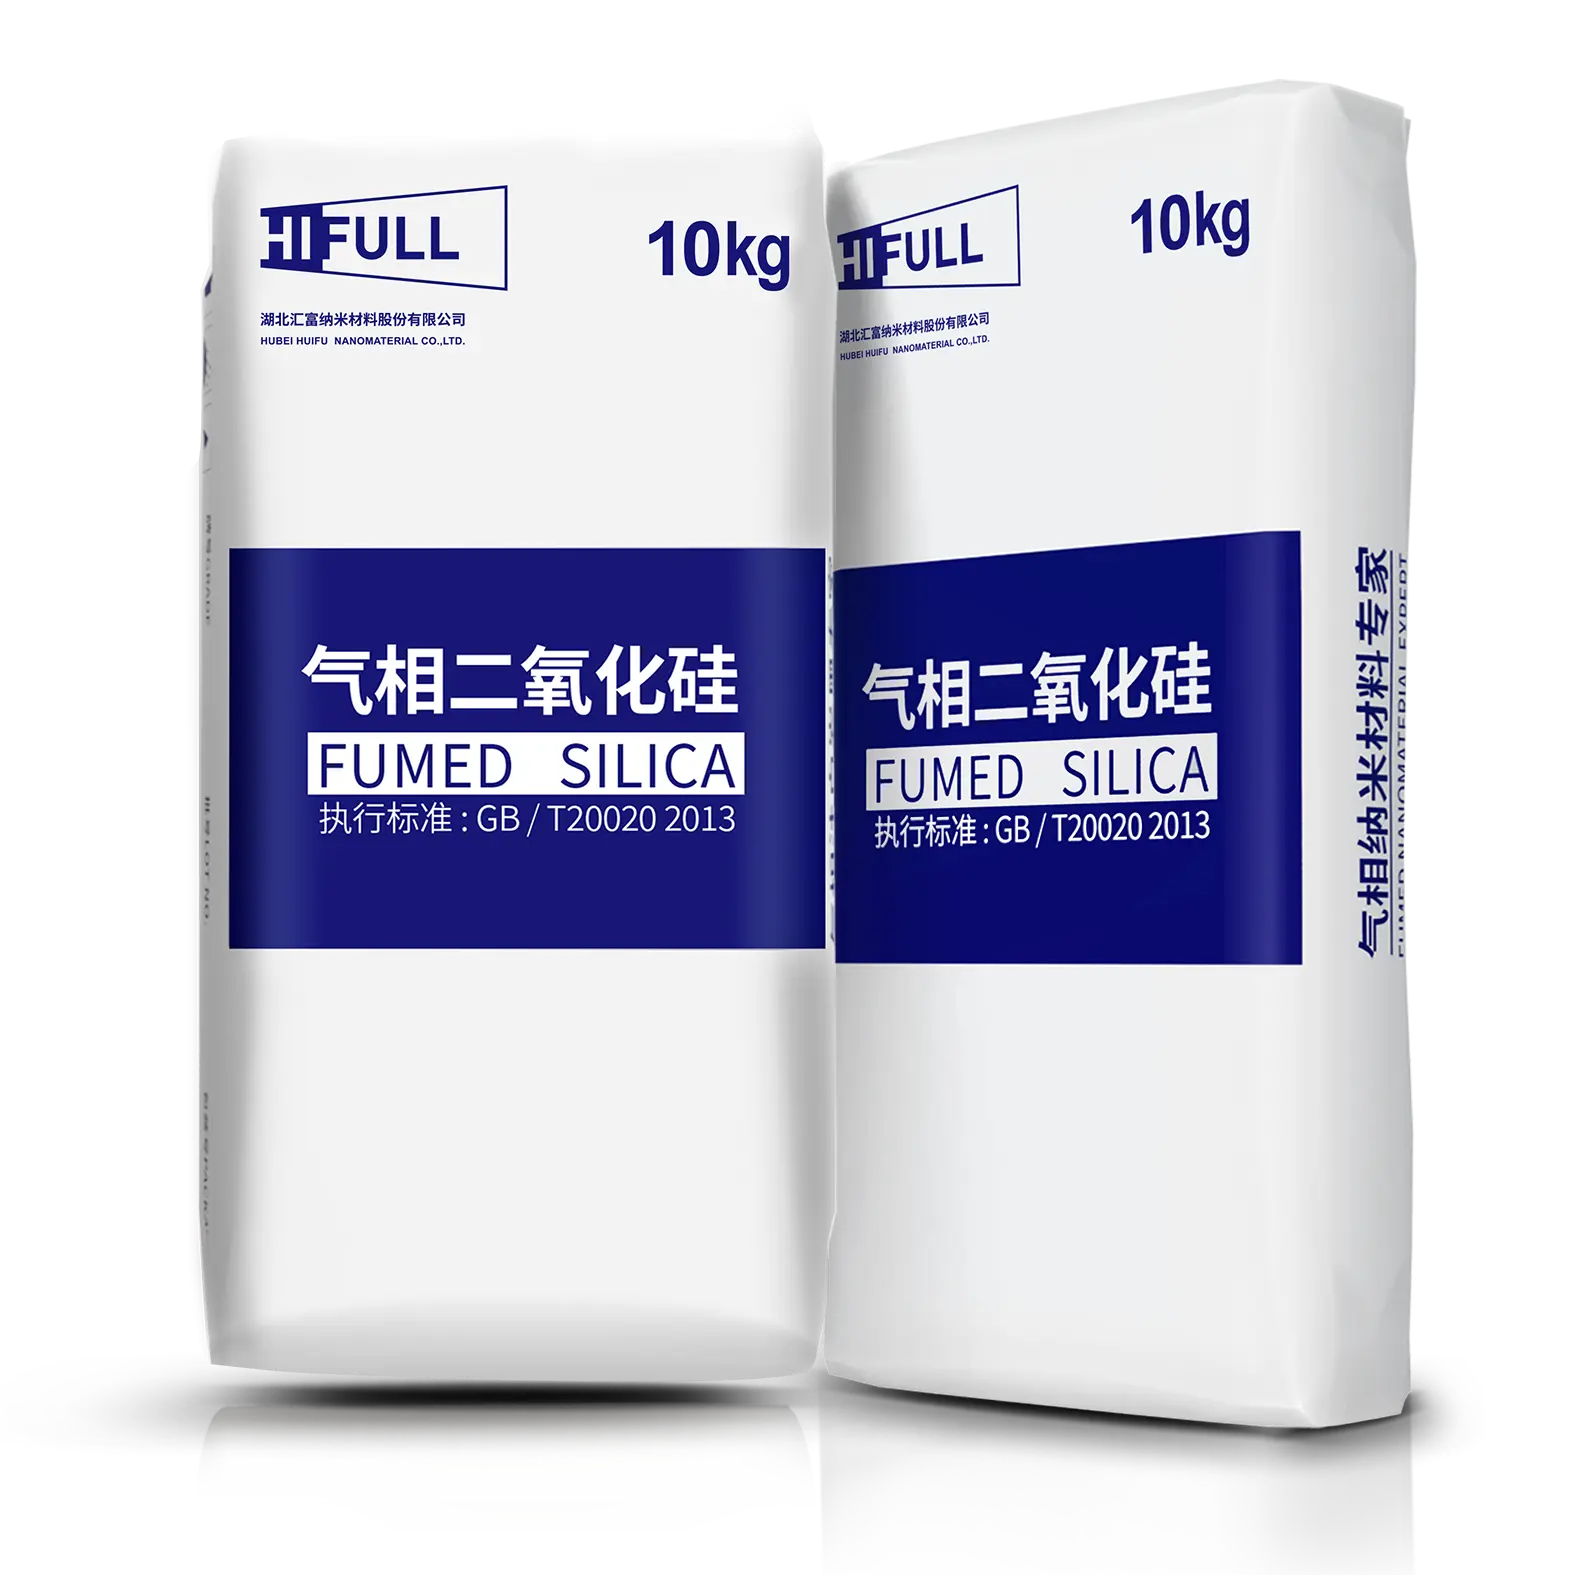 Factory Price Colloidal Nano Silica Hydrophobic Silicon Dioxide Powder For Sale Sio2 Nanoparticle Fumed Silica